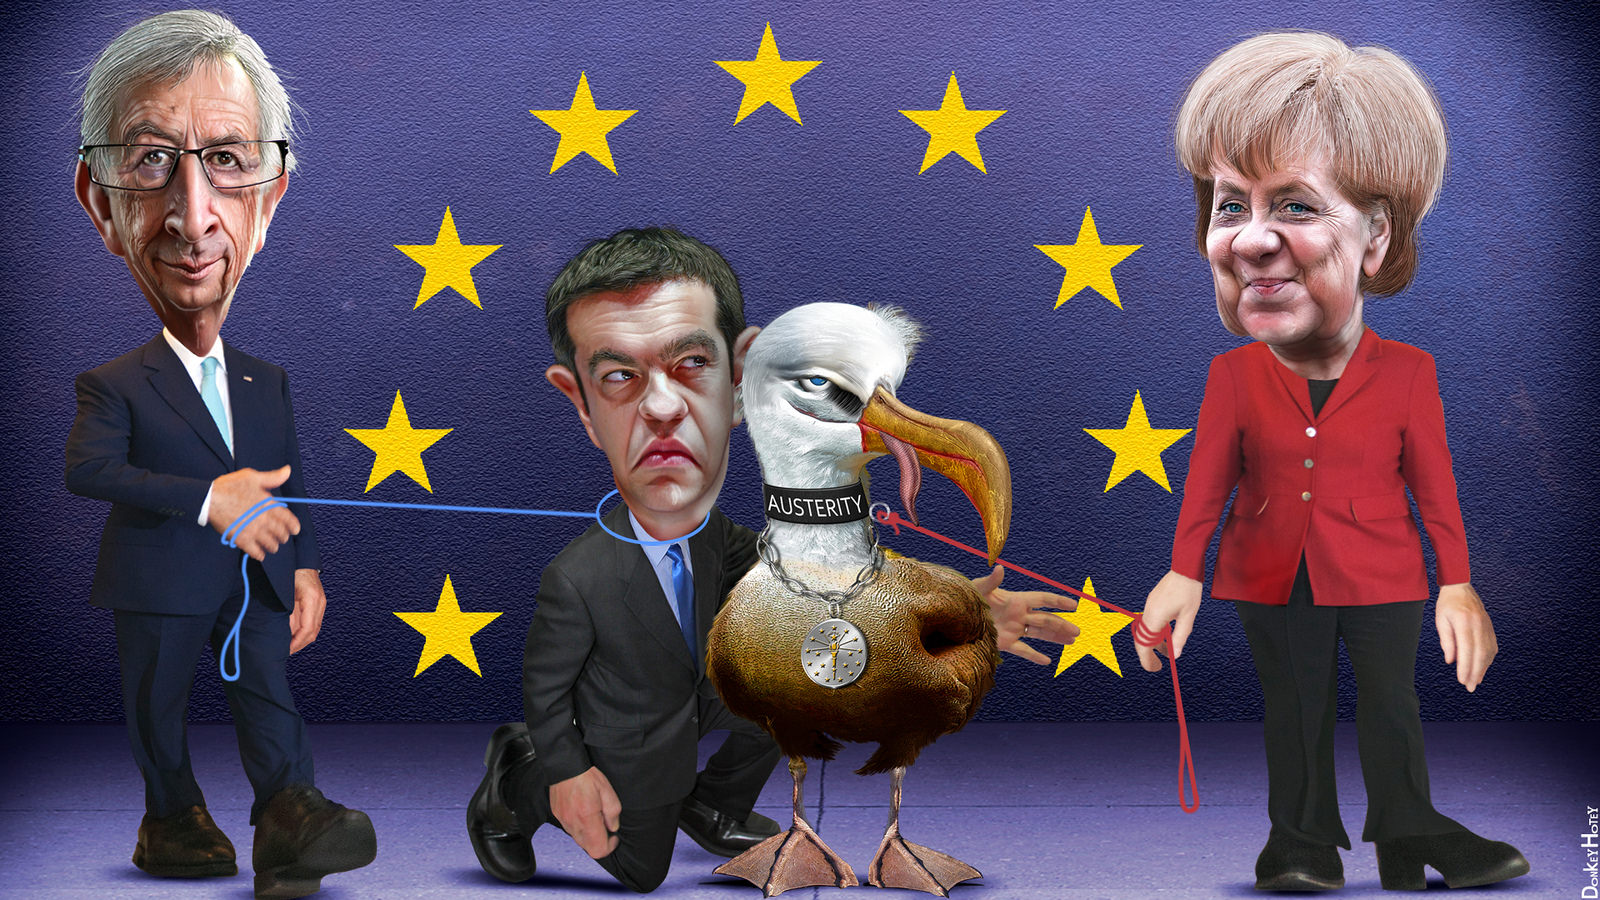 austerity-europe-EU-greece-bailout-syriza-tsipras